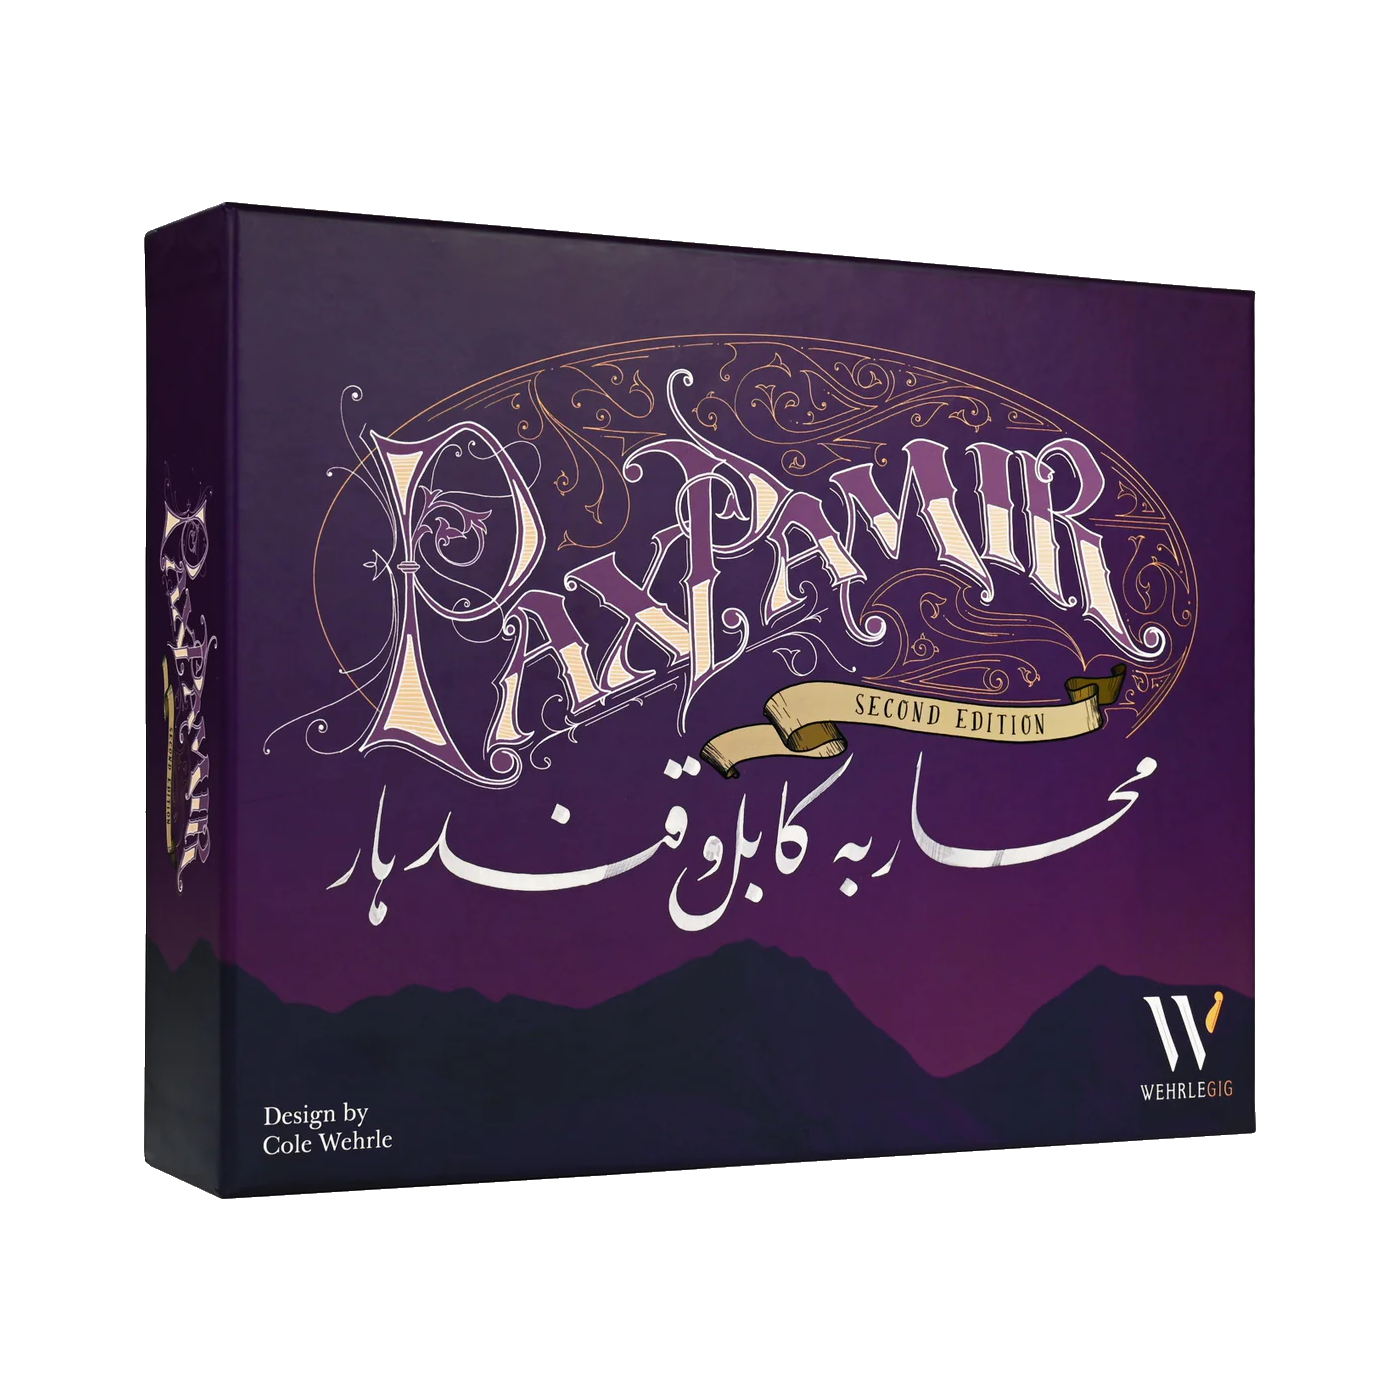 Pax Pamir (2nd edition)